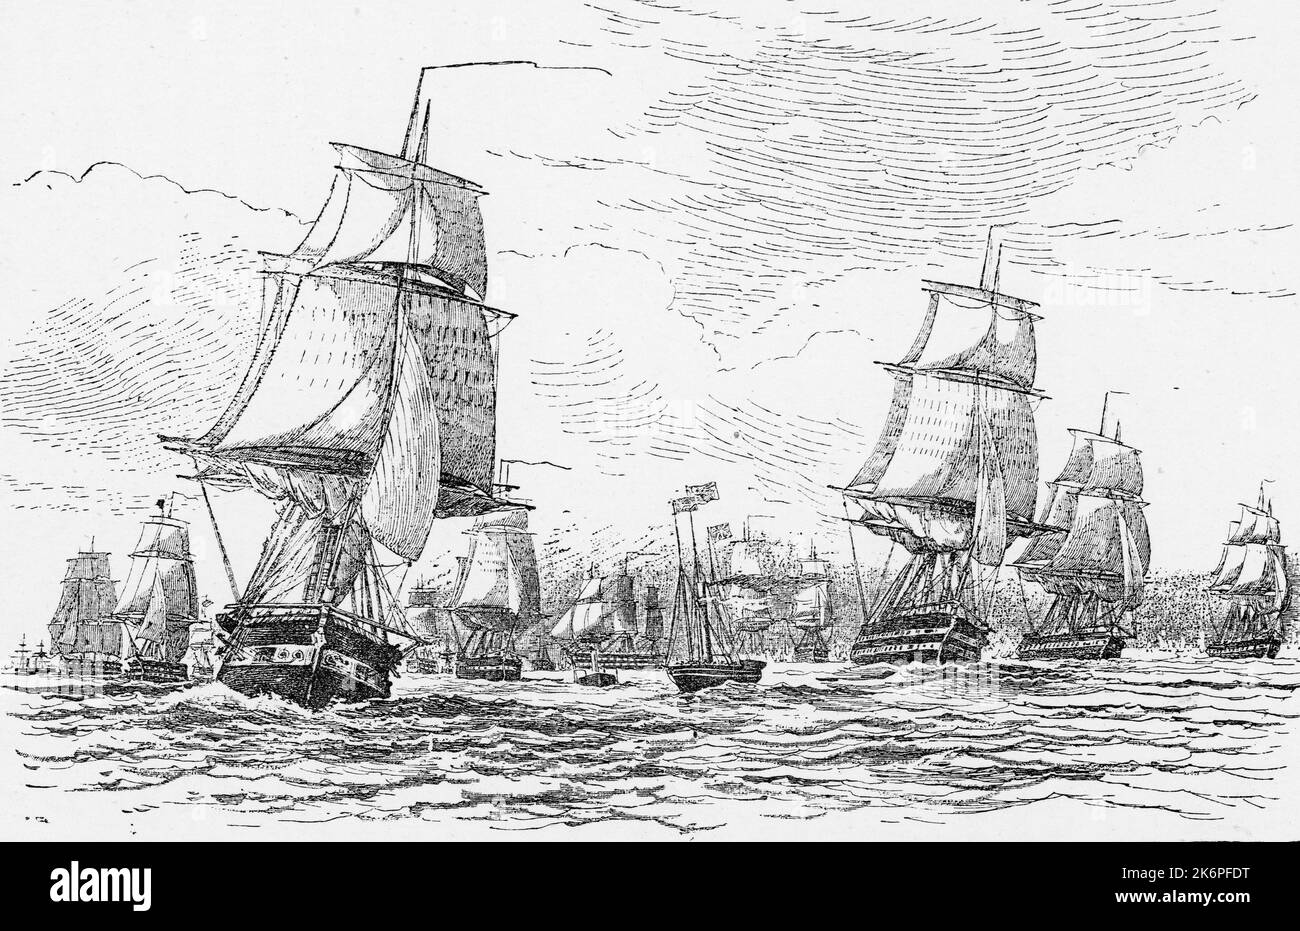 La flota que navega desde Spithead, 11 de marzo de 1854. Después de Edward Duncan (1803-1882). A medida que la Guerra de Crimea se acercaba, una flota de barcos de la Marina Real se reunió en Spithead, en el Solent, para partir hacia el Mar Báltico. Debían impedir que la Flota del Norte de Rusia entrara en el Mar del Norte y amenazara a Gran Bretaña. La Reina Victoria observó la salida de los barcos, a bordo del yate Fairy, visto aquí en el centro del primer plano volando el estándar real. Los barcos incluían el Royal George (primer plano izquierdo) y St Jean d’Acre (que dirigía la flota a la derecha). Foto de stock